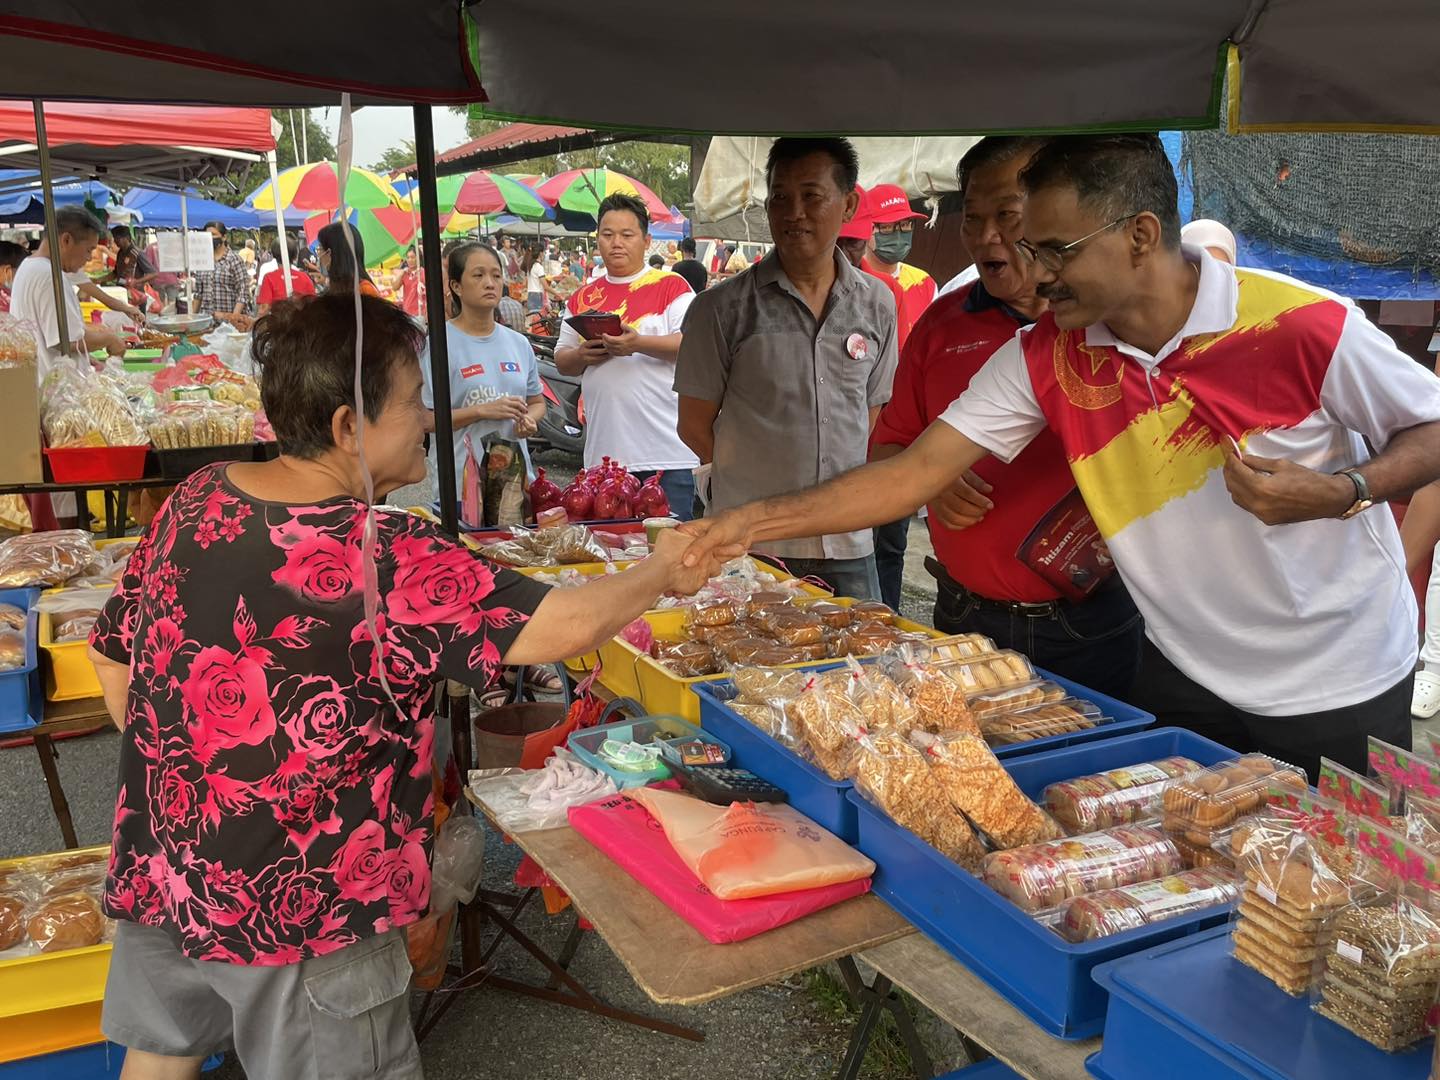 峇峇萊都来到仁嘉隆新村向村民和小贩拜票，获得他们热烈欢迎。